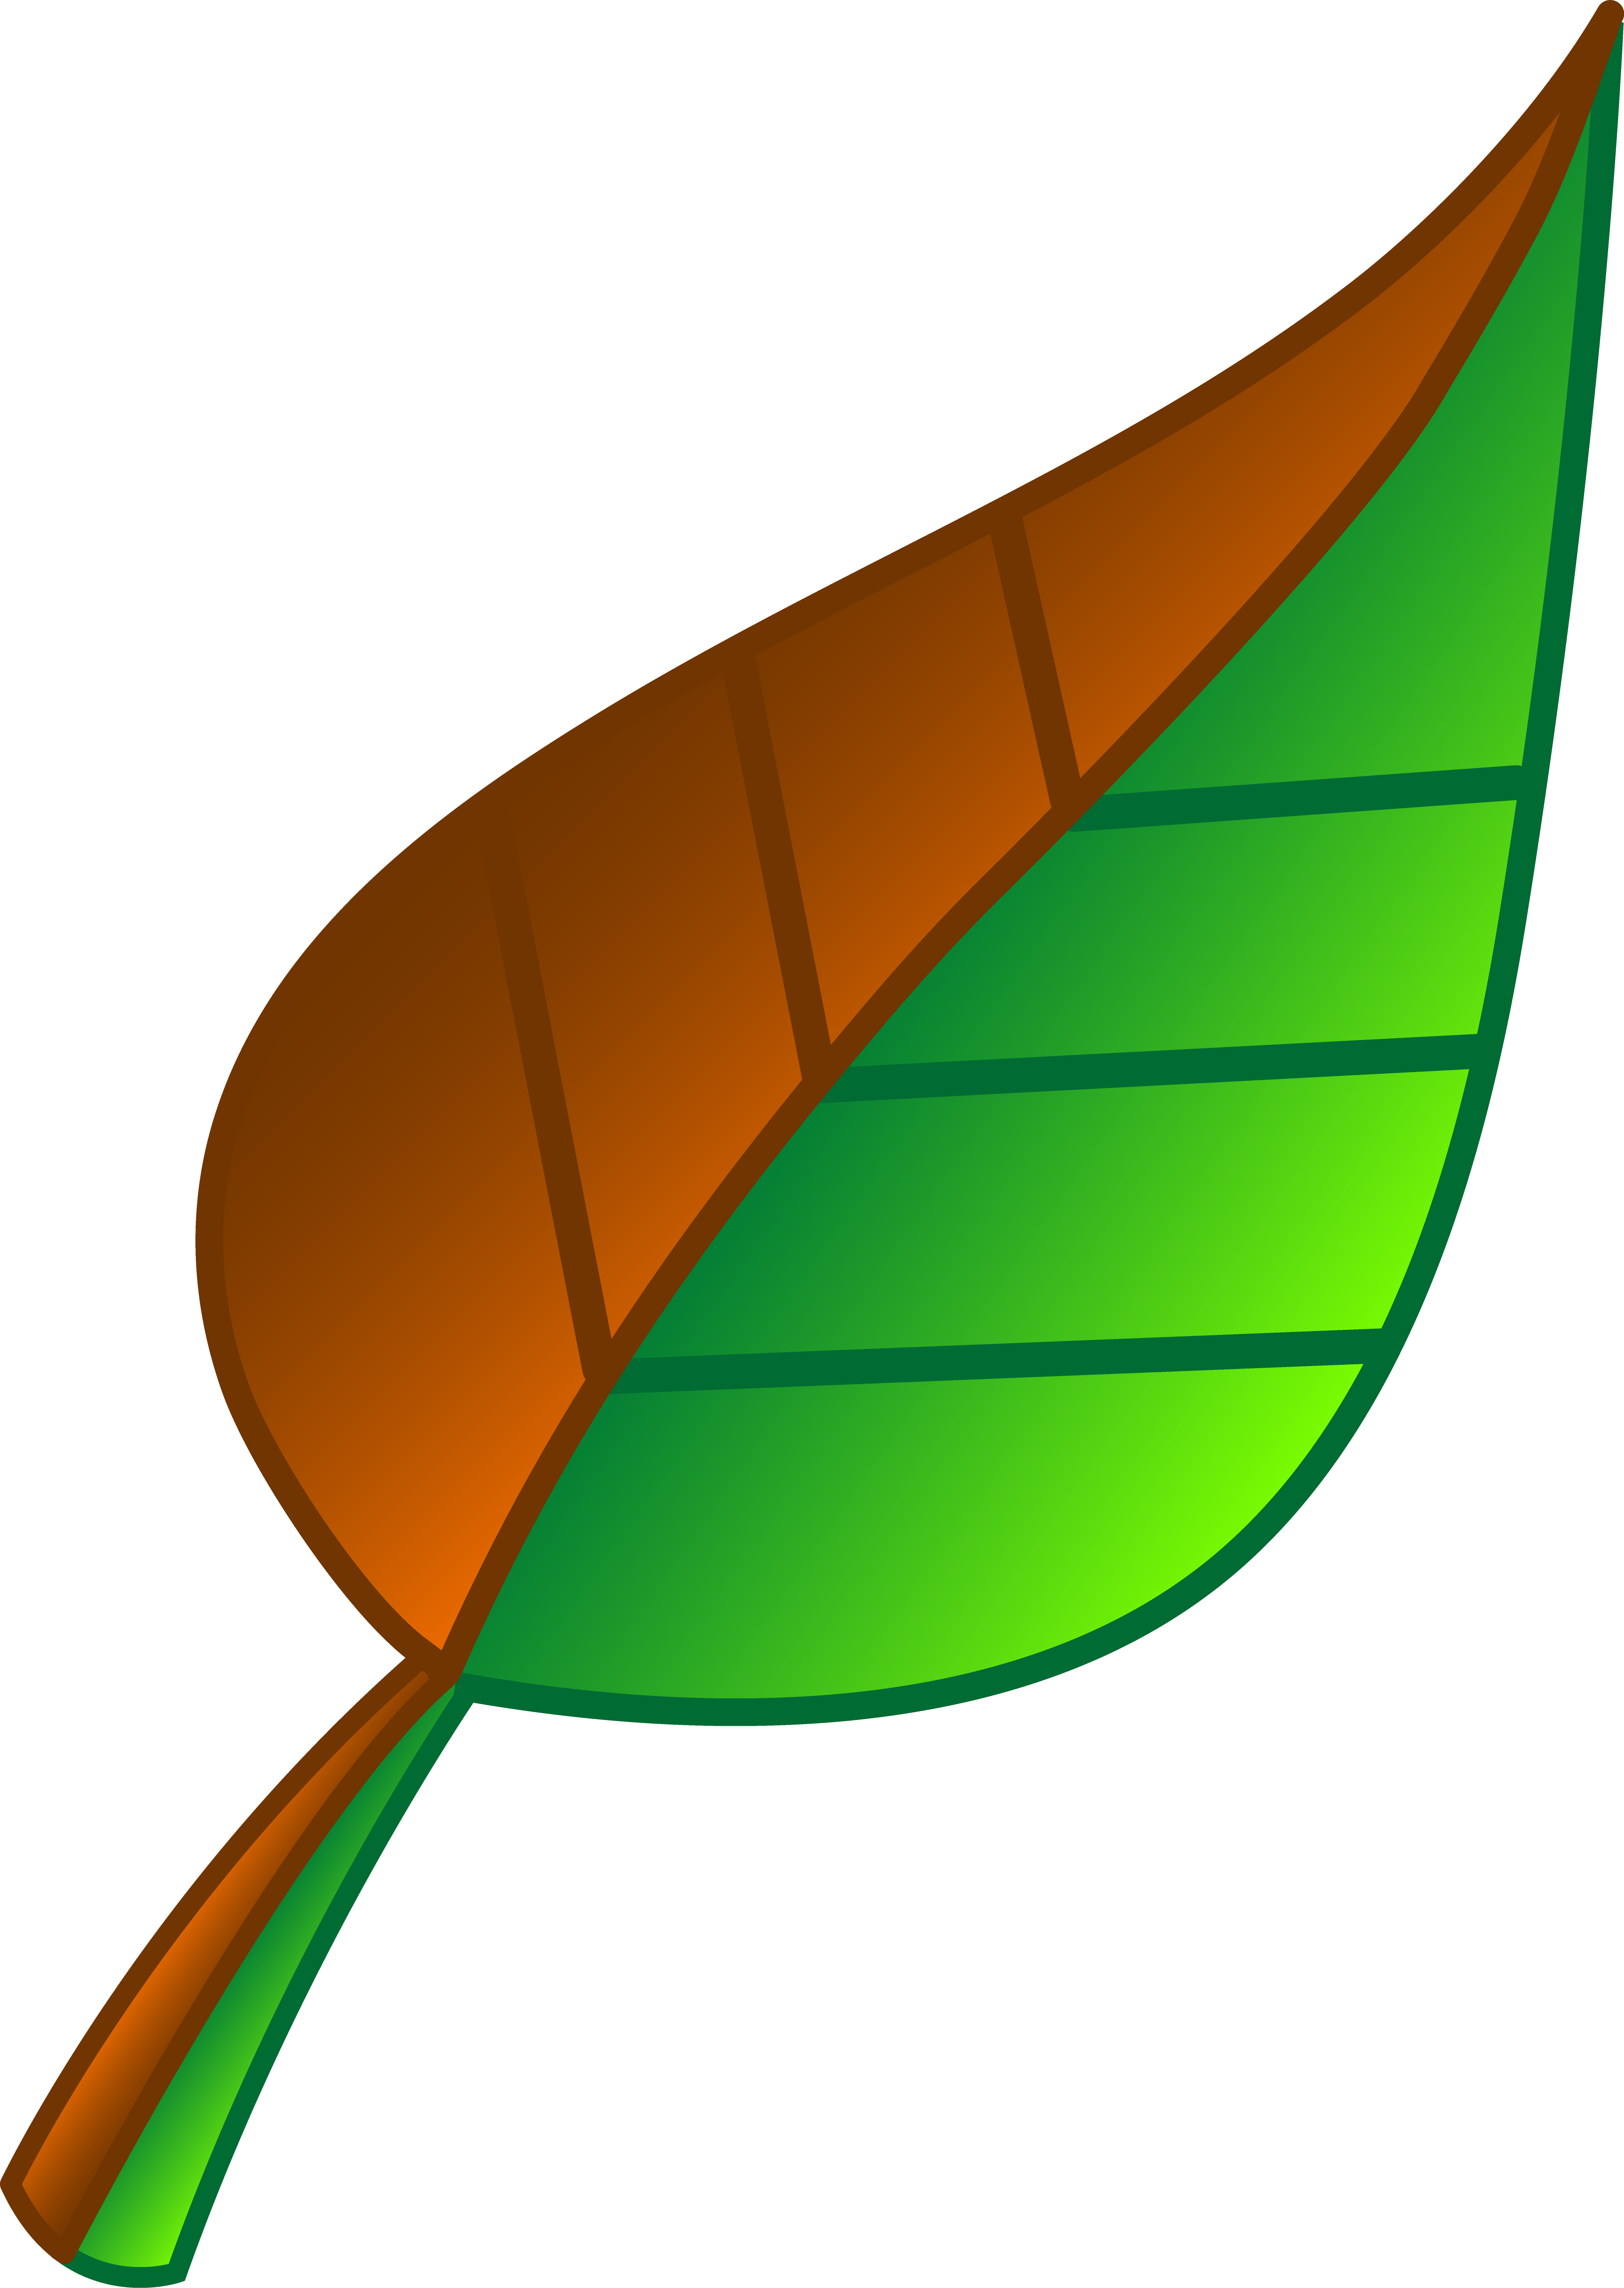 A green leaf photo